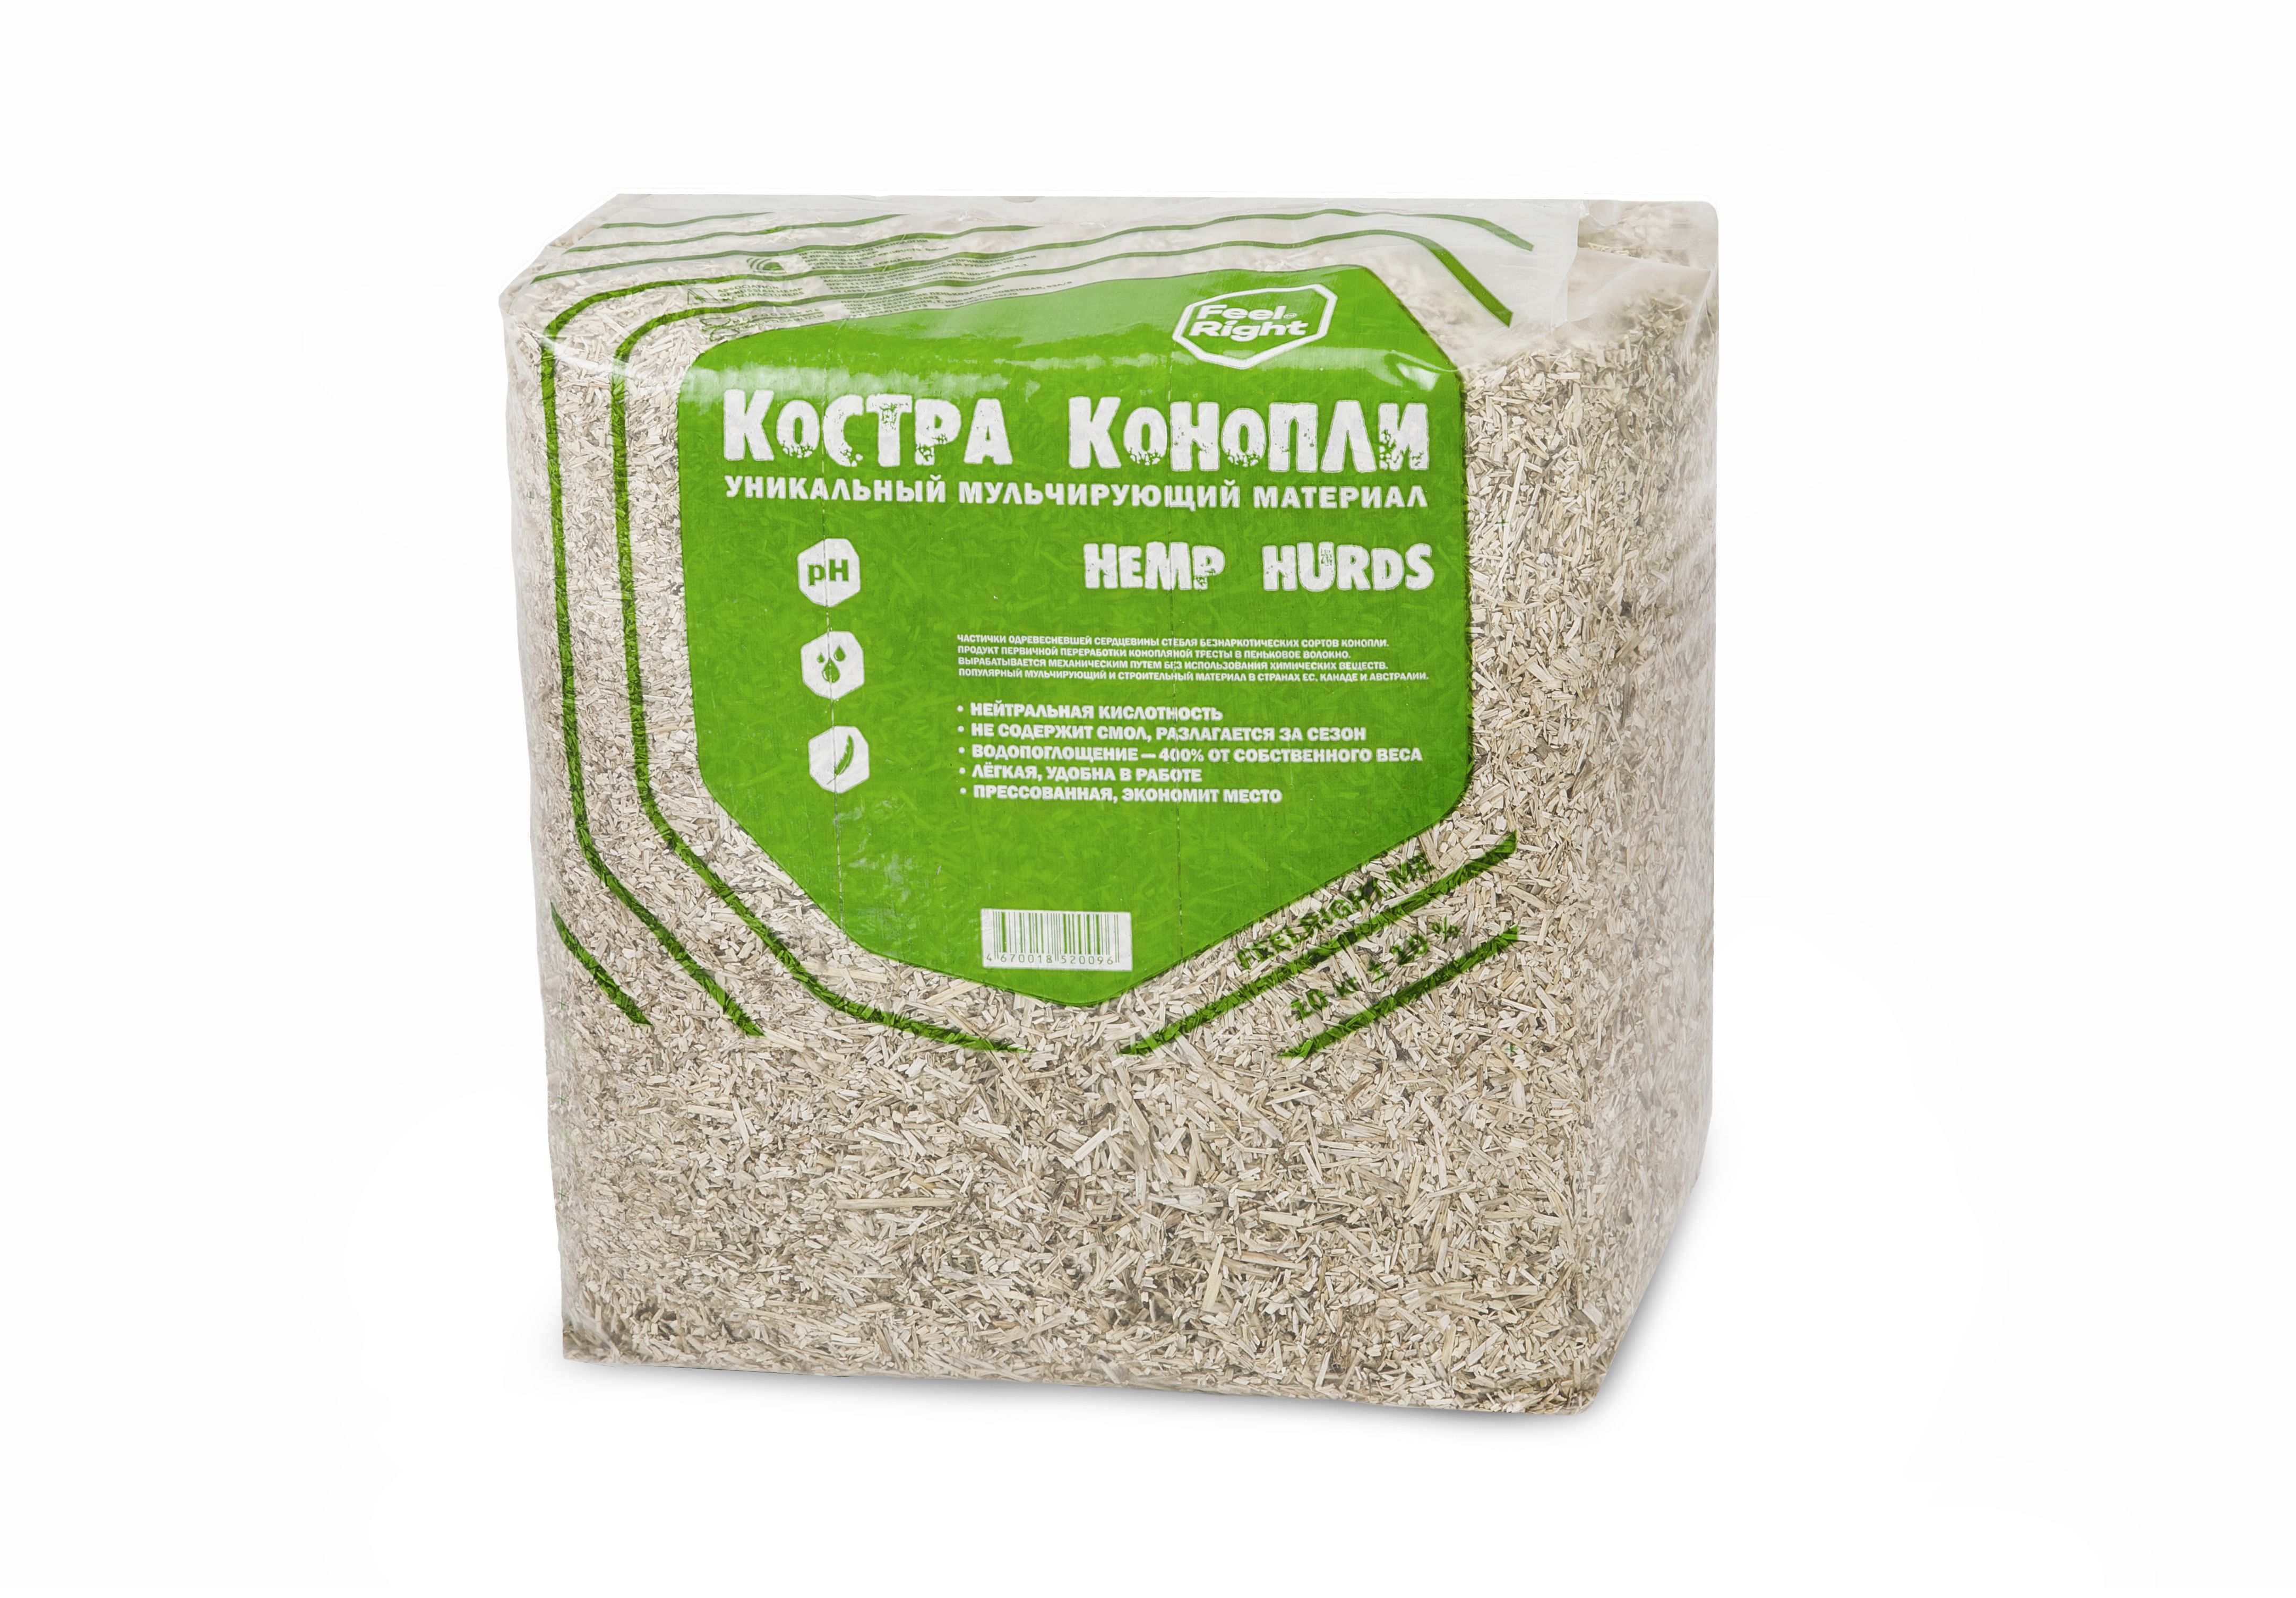 Купить зерна конопли в москве как смешать коноплю